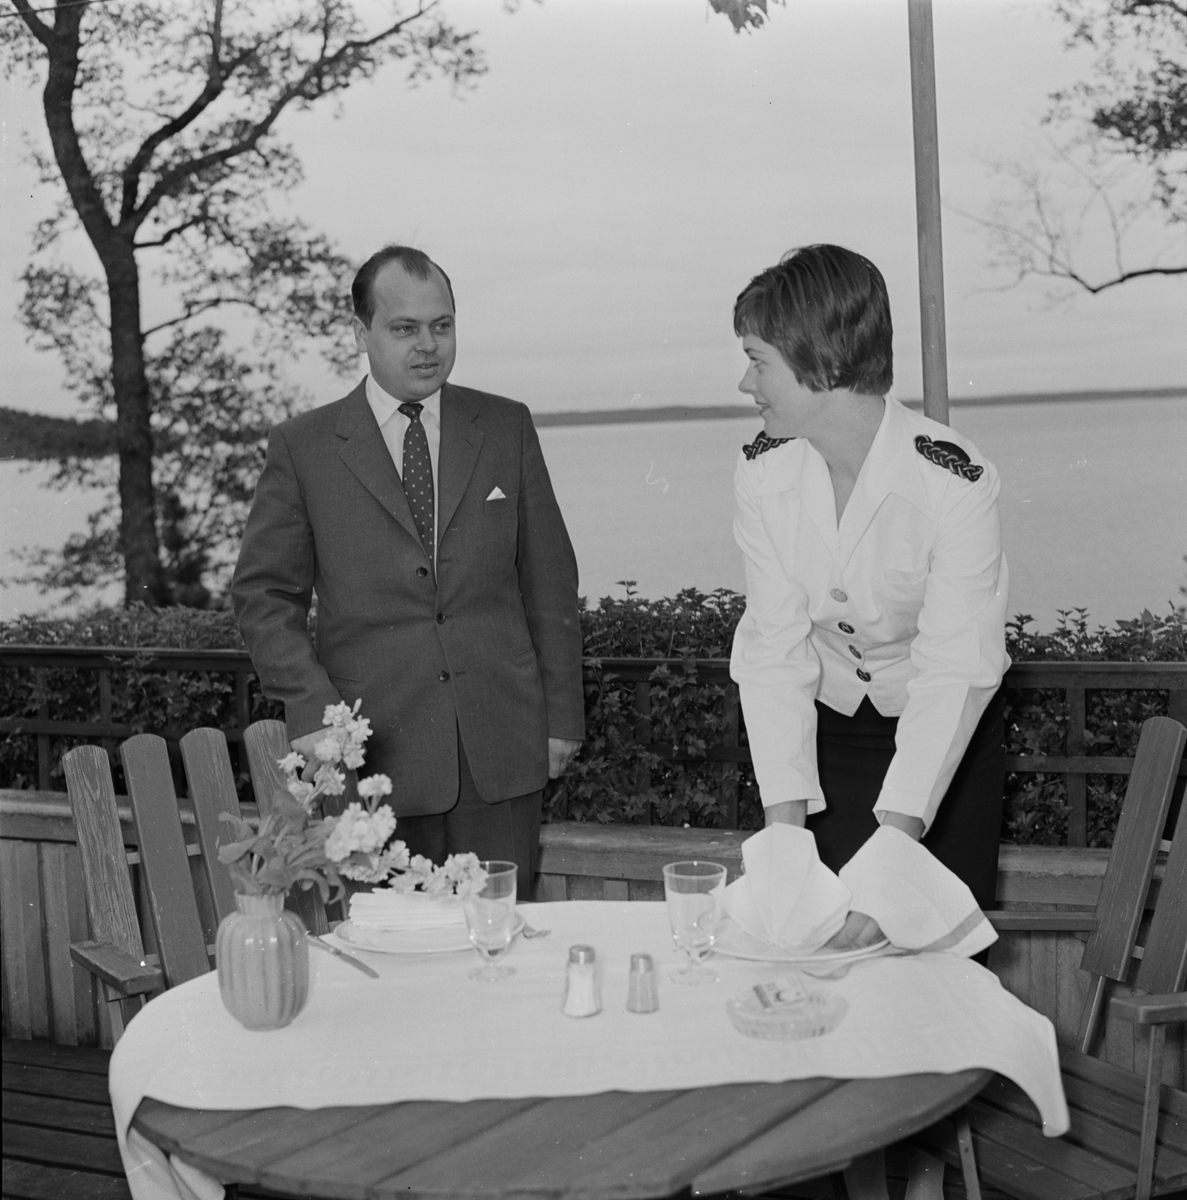 Skarholmen - källarmästare och flicka, Sunnersta, Uppsala 1957